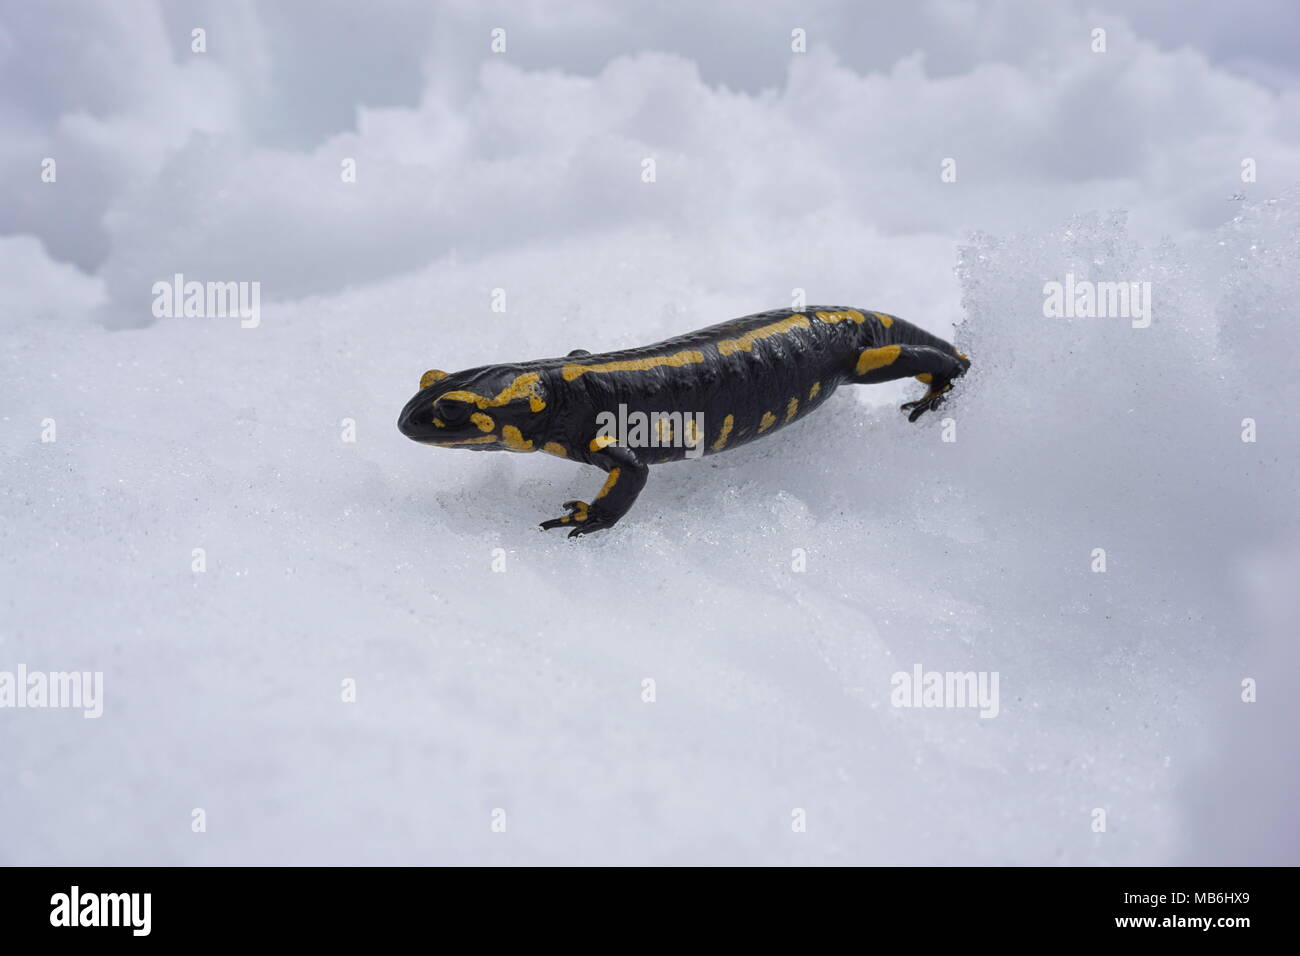 Ein feuersalamander im Schnee, Salamandra salamandra, Massif des Alberes, Pyrenees Orientales, Frankreich Stockfoto